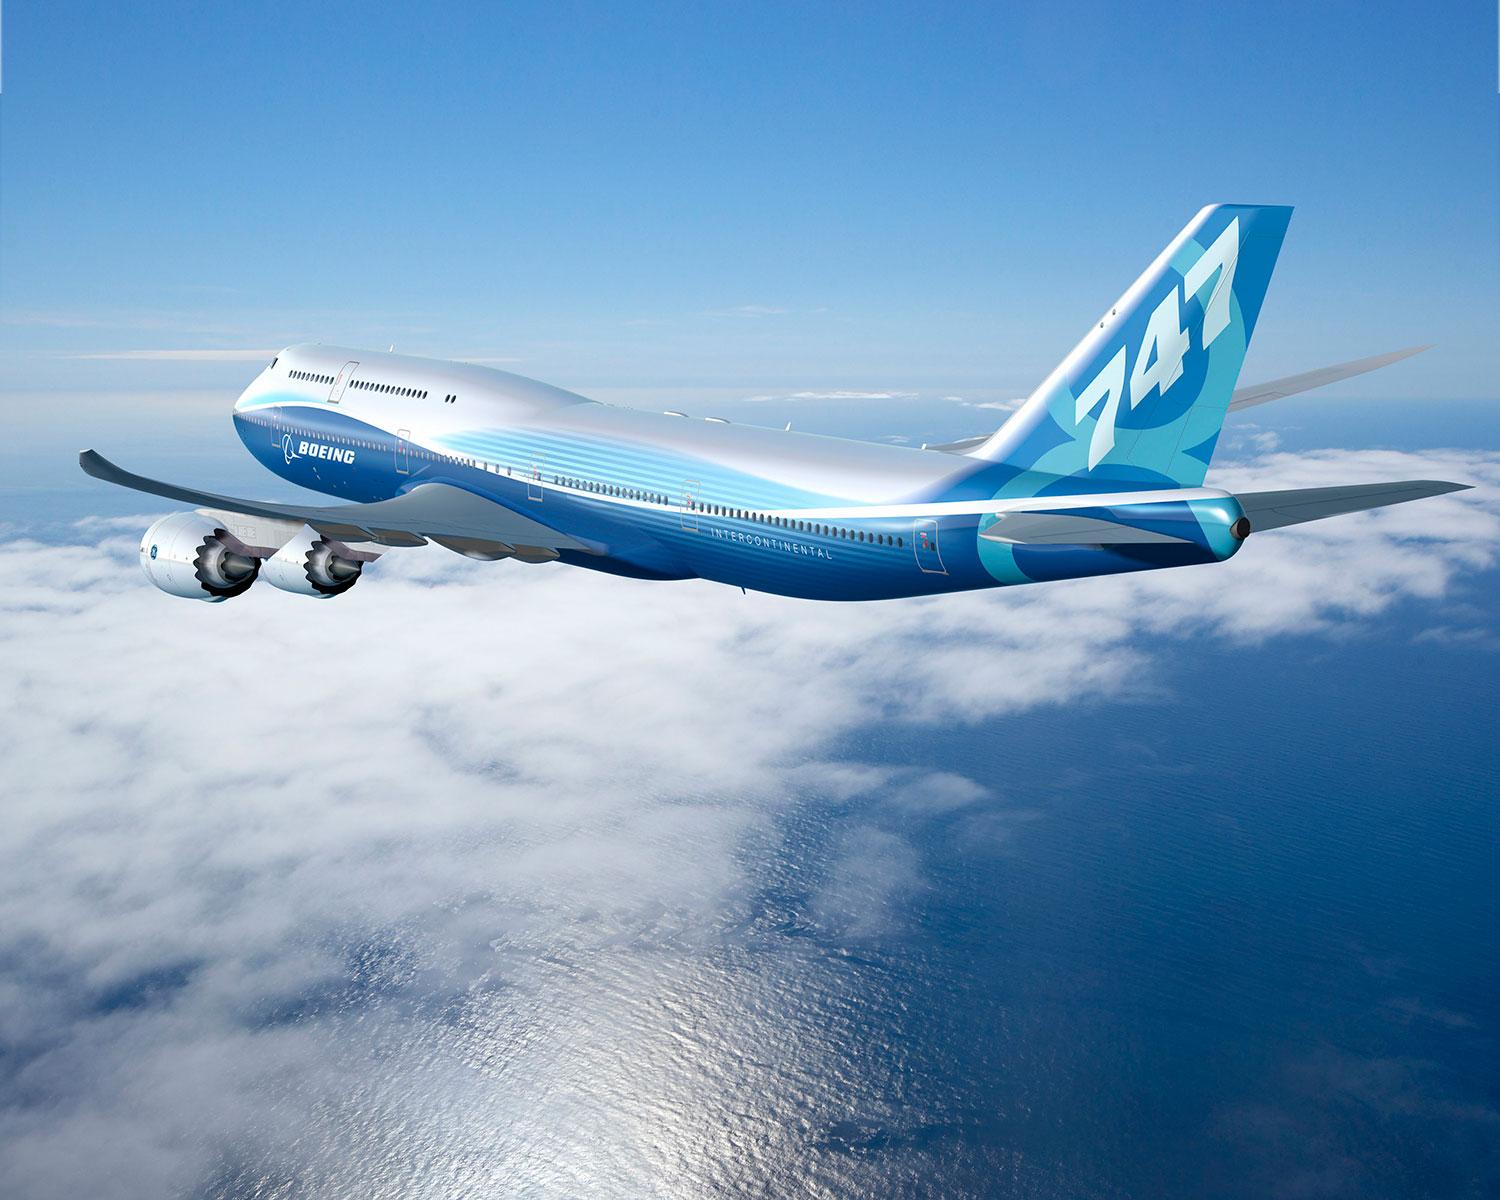 Bägge flygplanen var av typen Boeing 747 jumobjet.